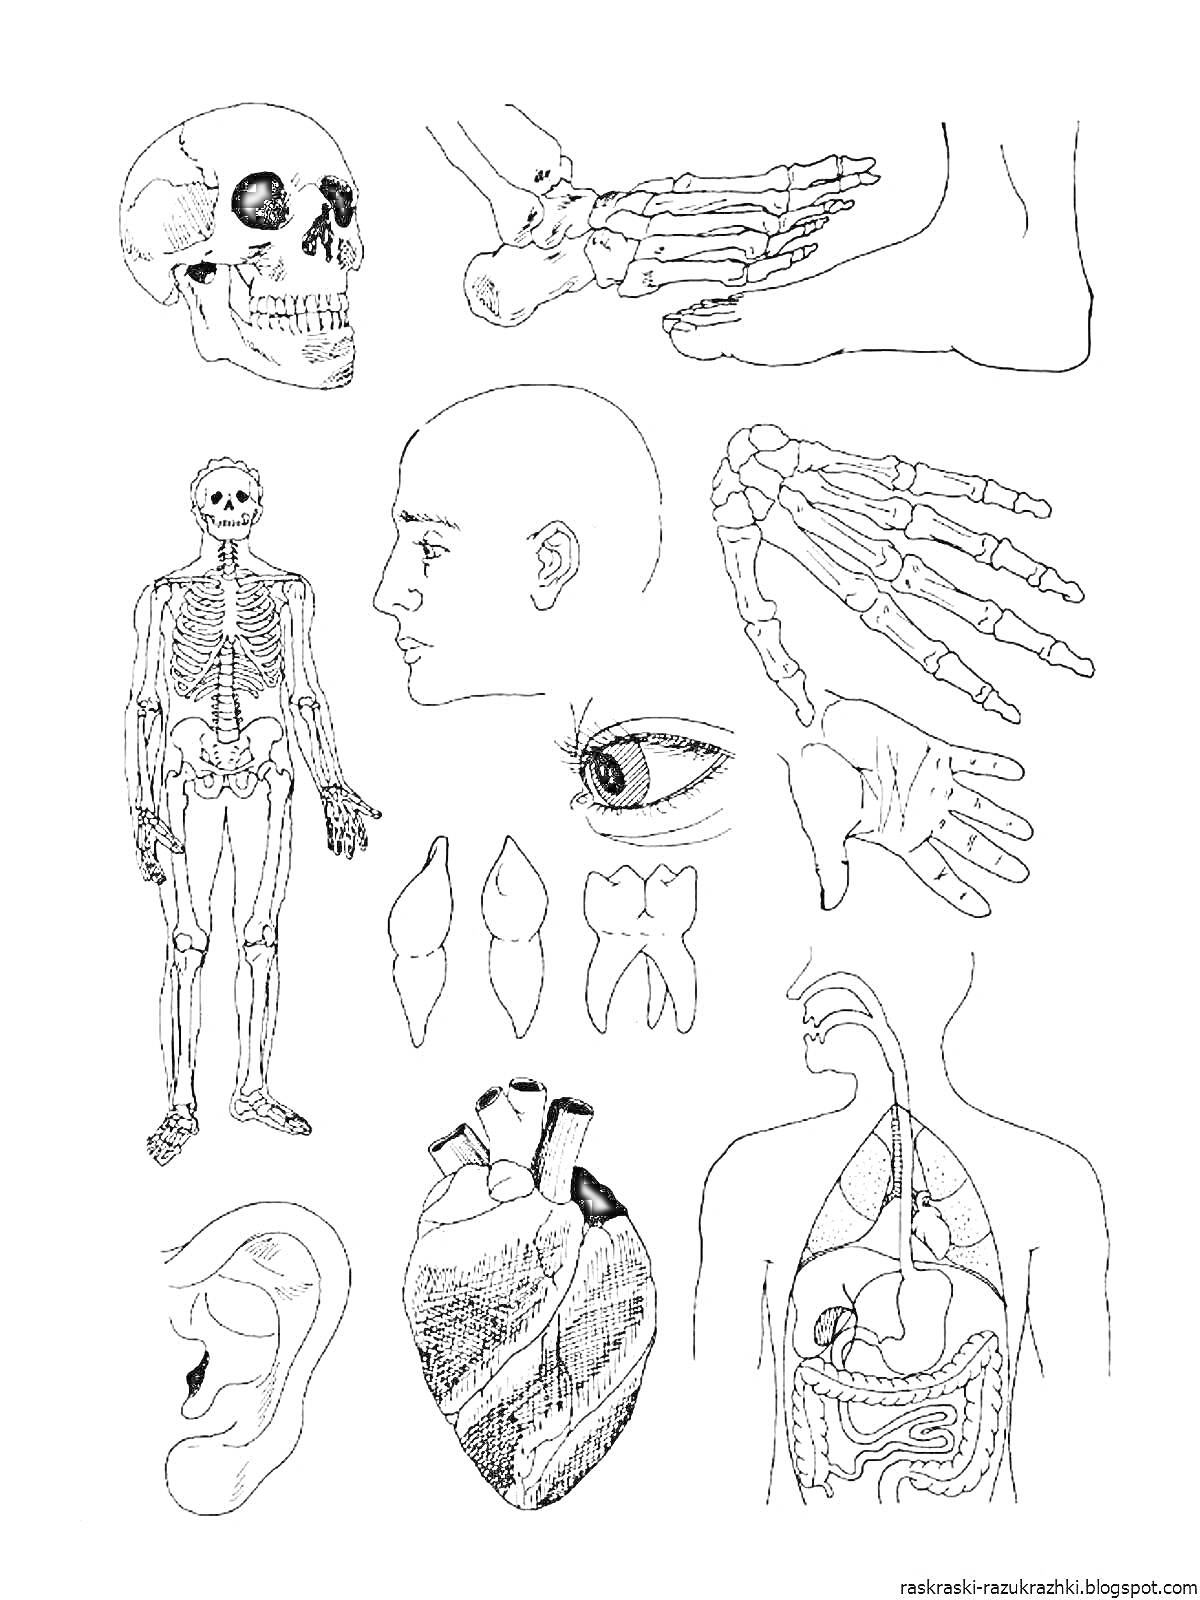 Раскраска Раскраска – части тела человека: череп, ступня, скелет, голова, кисть руки, зубы, глаз, сердце, грудная клетка